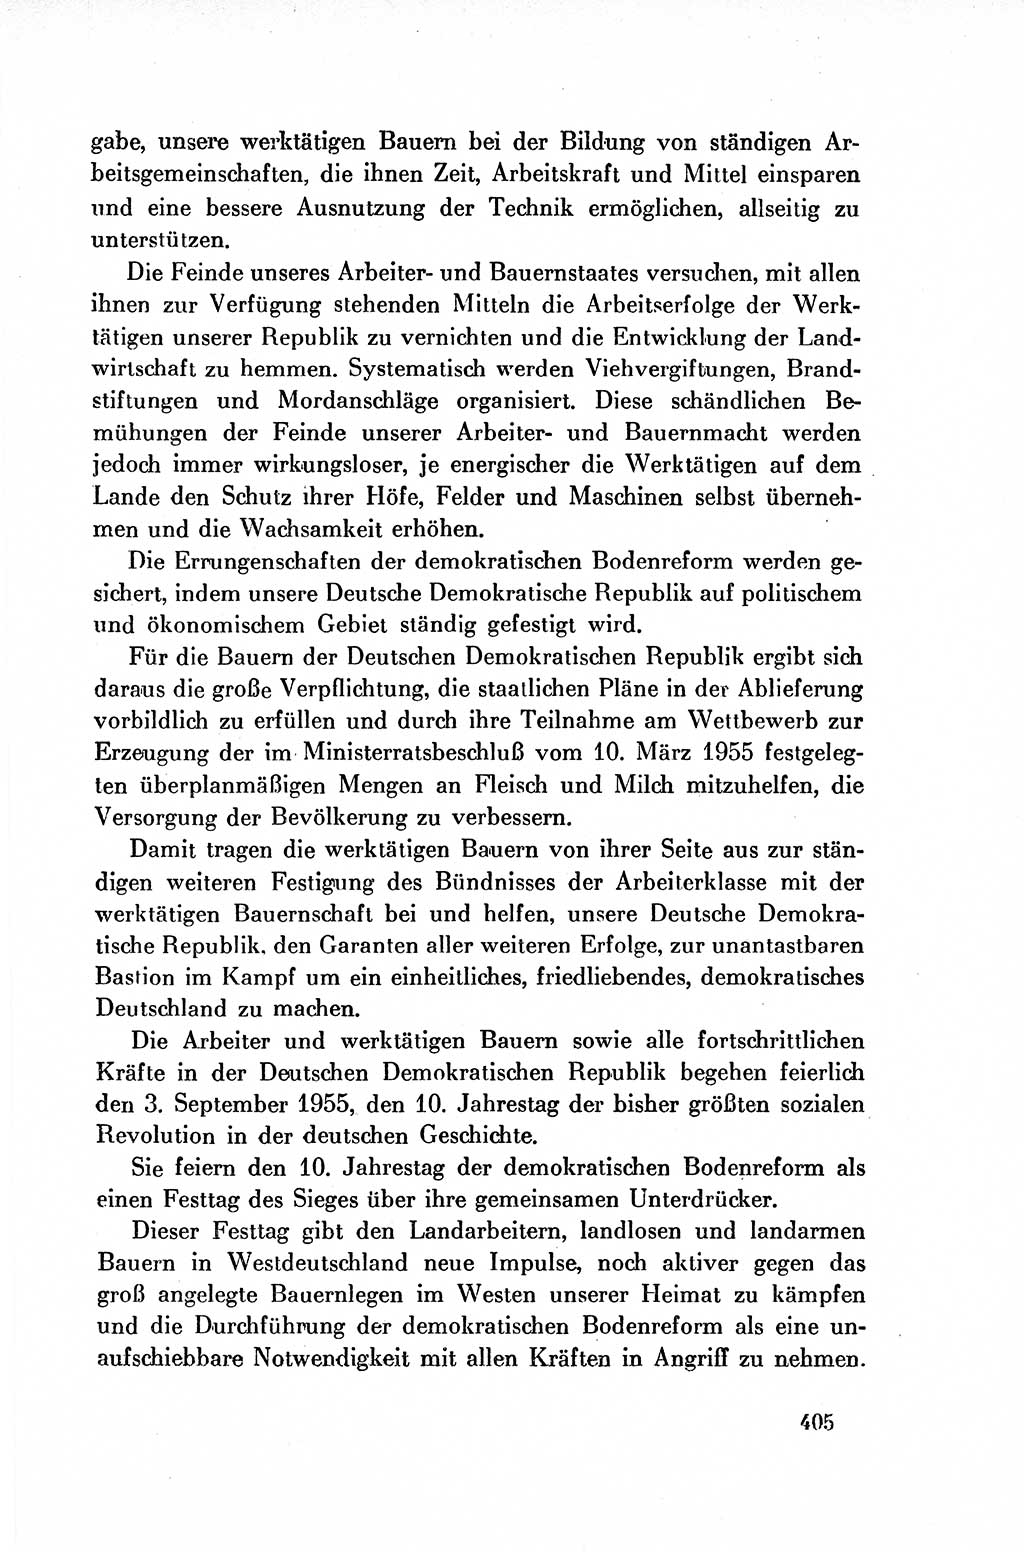 Dokumente der Sozialistischen Einheitspartei Deutschlands (SED) [Deutsche Demokratische Republik (DDR)] 1954-1955, Seite 405 (Dok. SED DDR 1954-1955, S. 405)